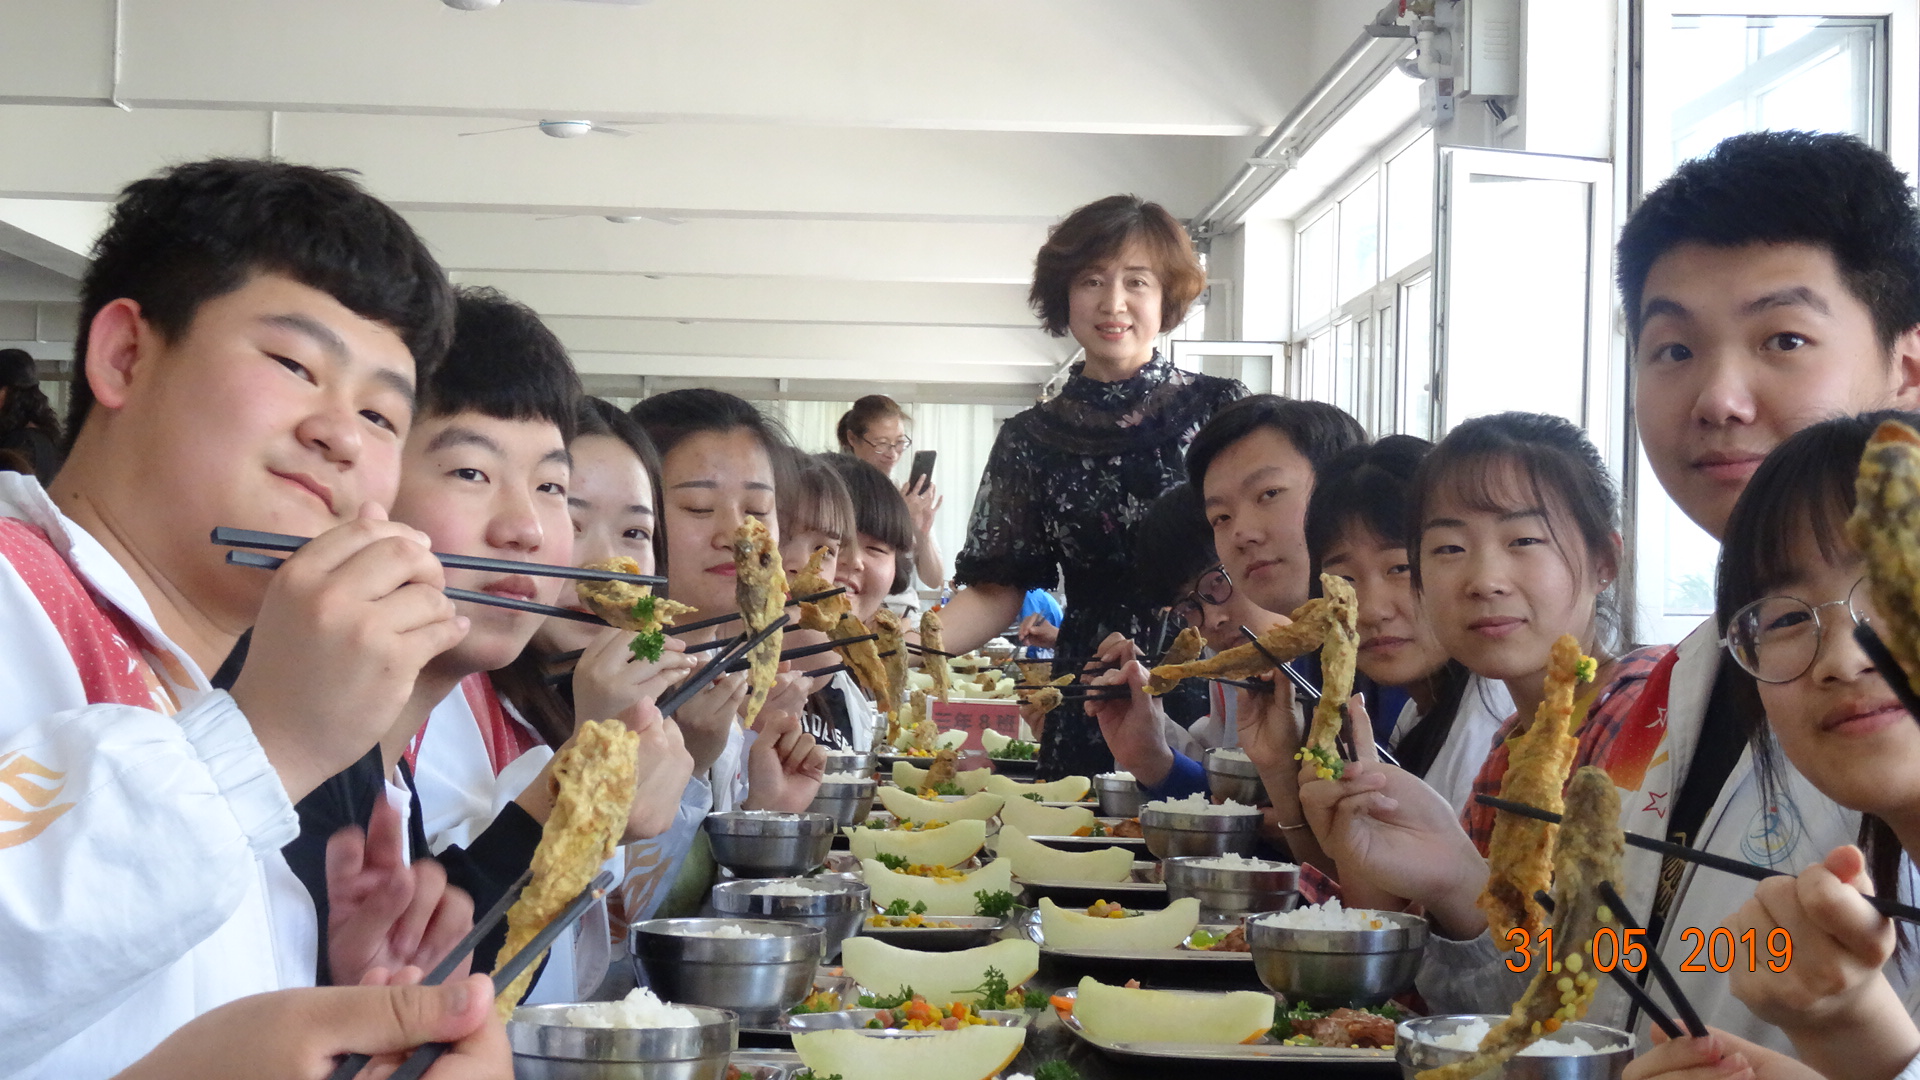 锦州二高中高考“助力餐”